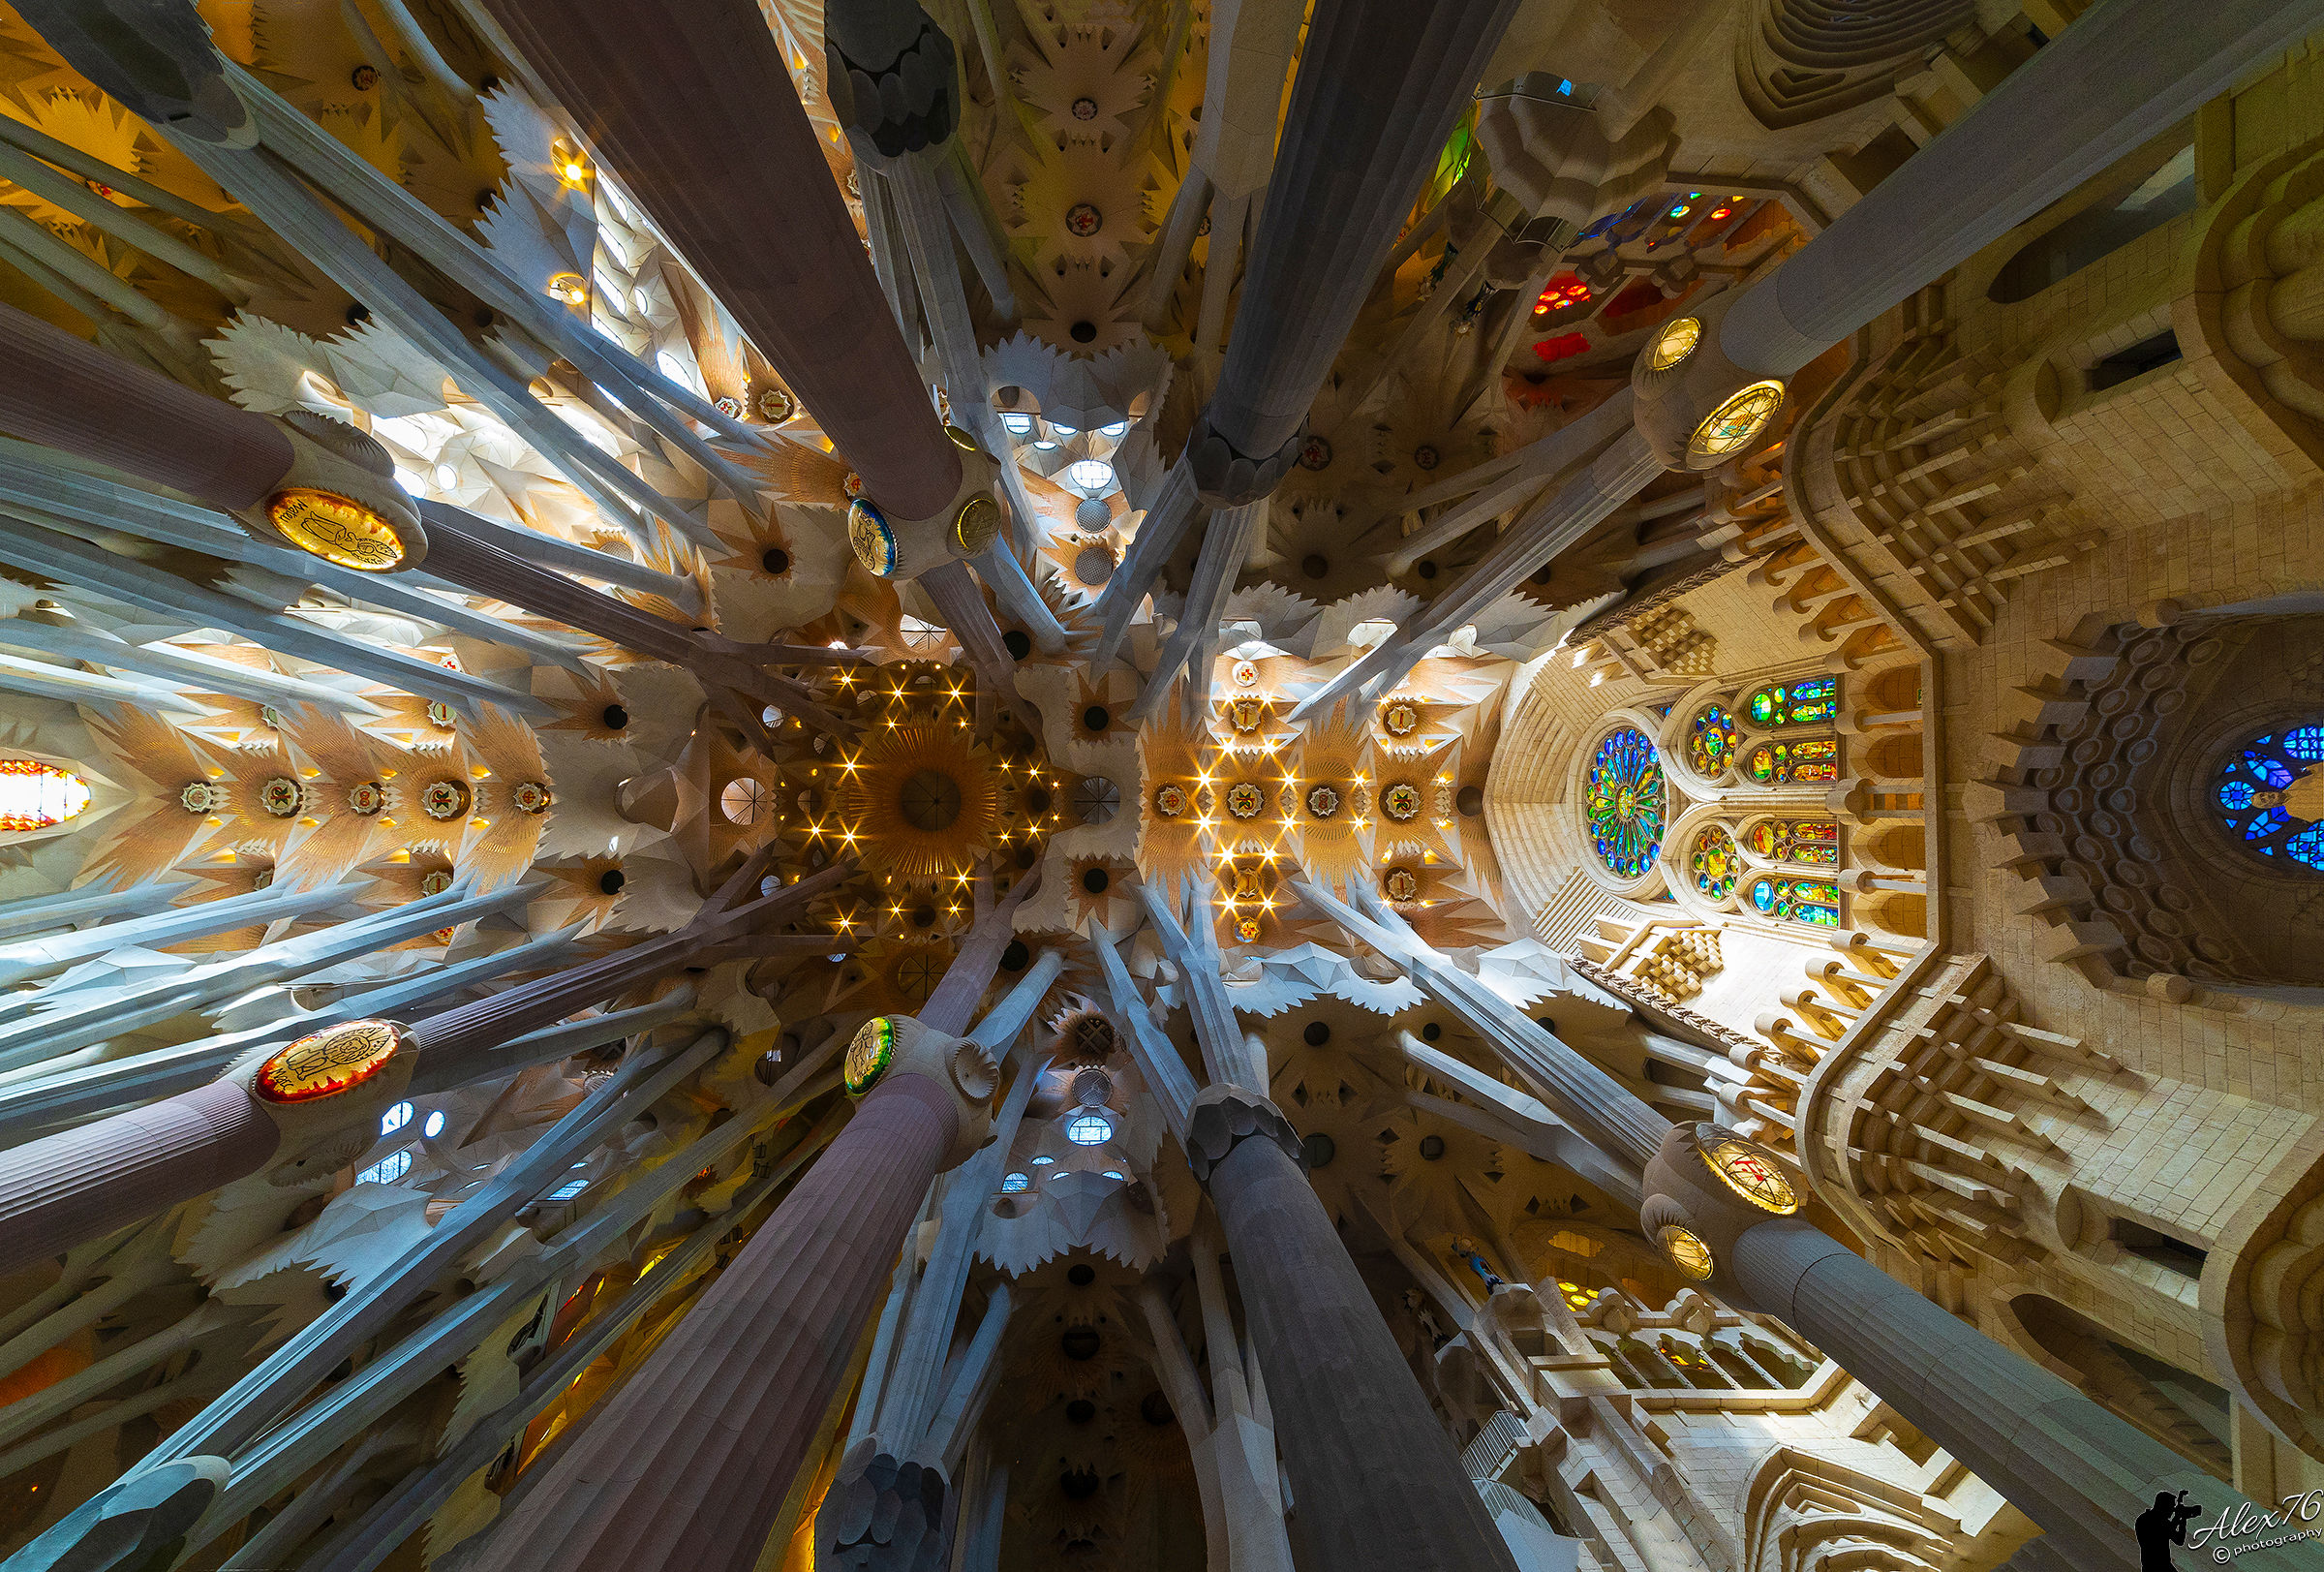 The Sagrada Familia...